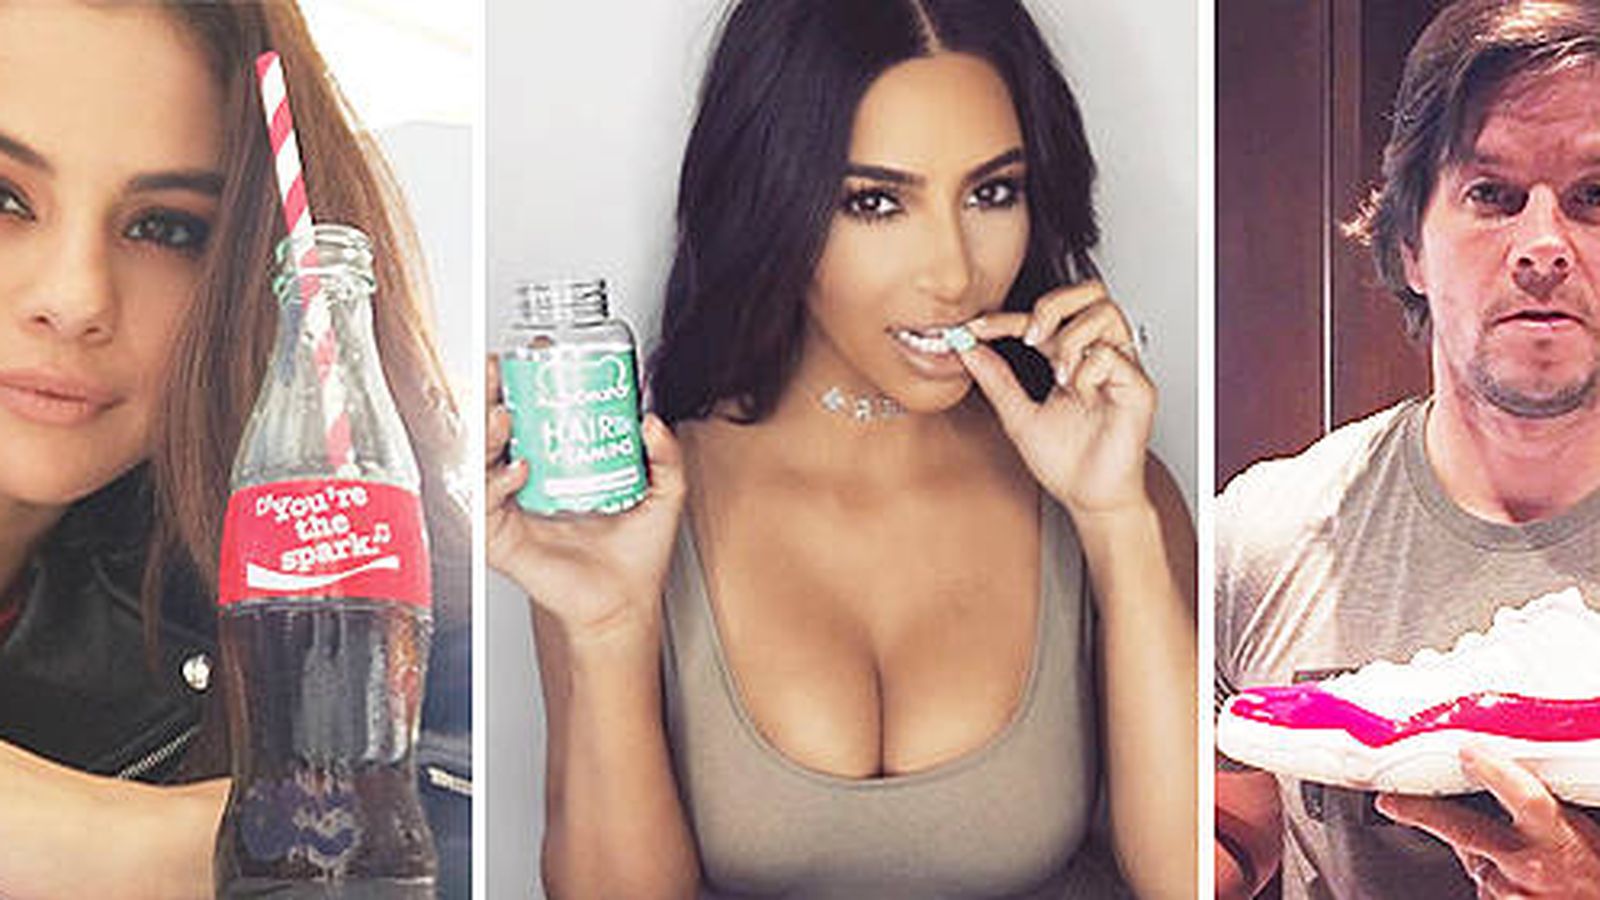 Foto: Selena Gómez, Kim Kardashian y Mark Wahlberg, promocionando productos en sus cuentas de Instagram